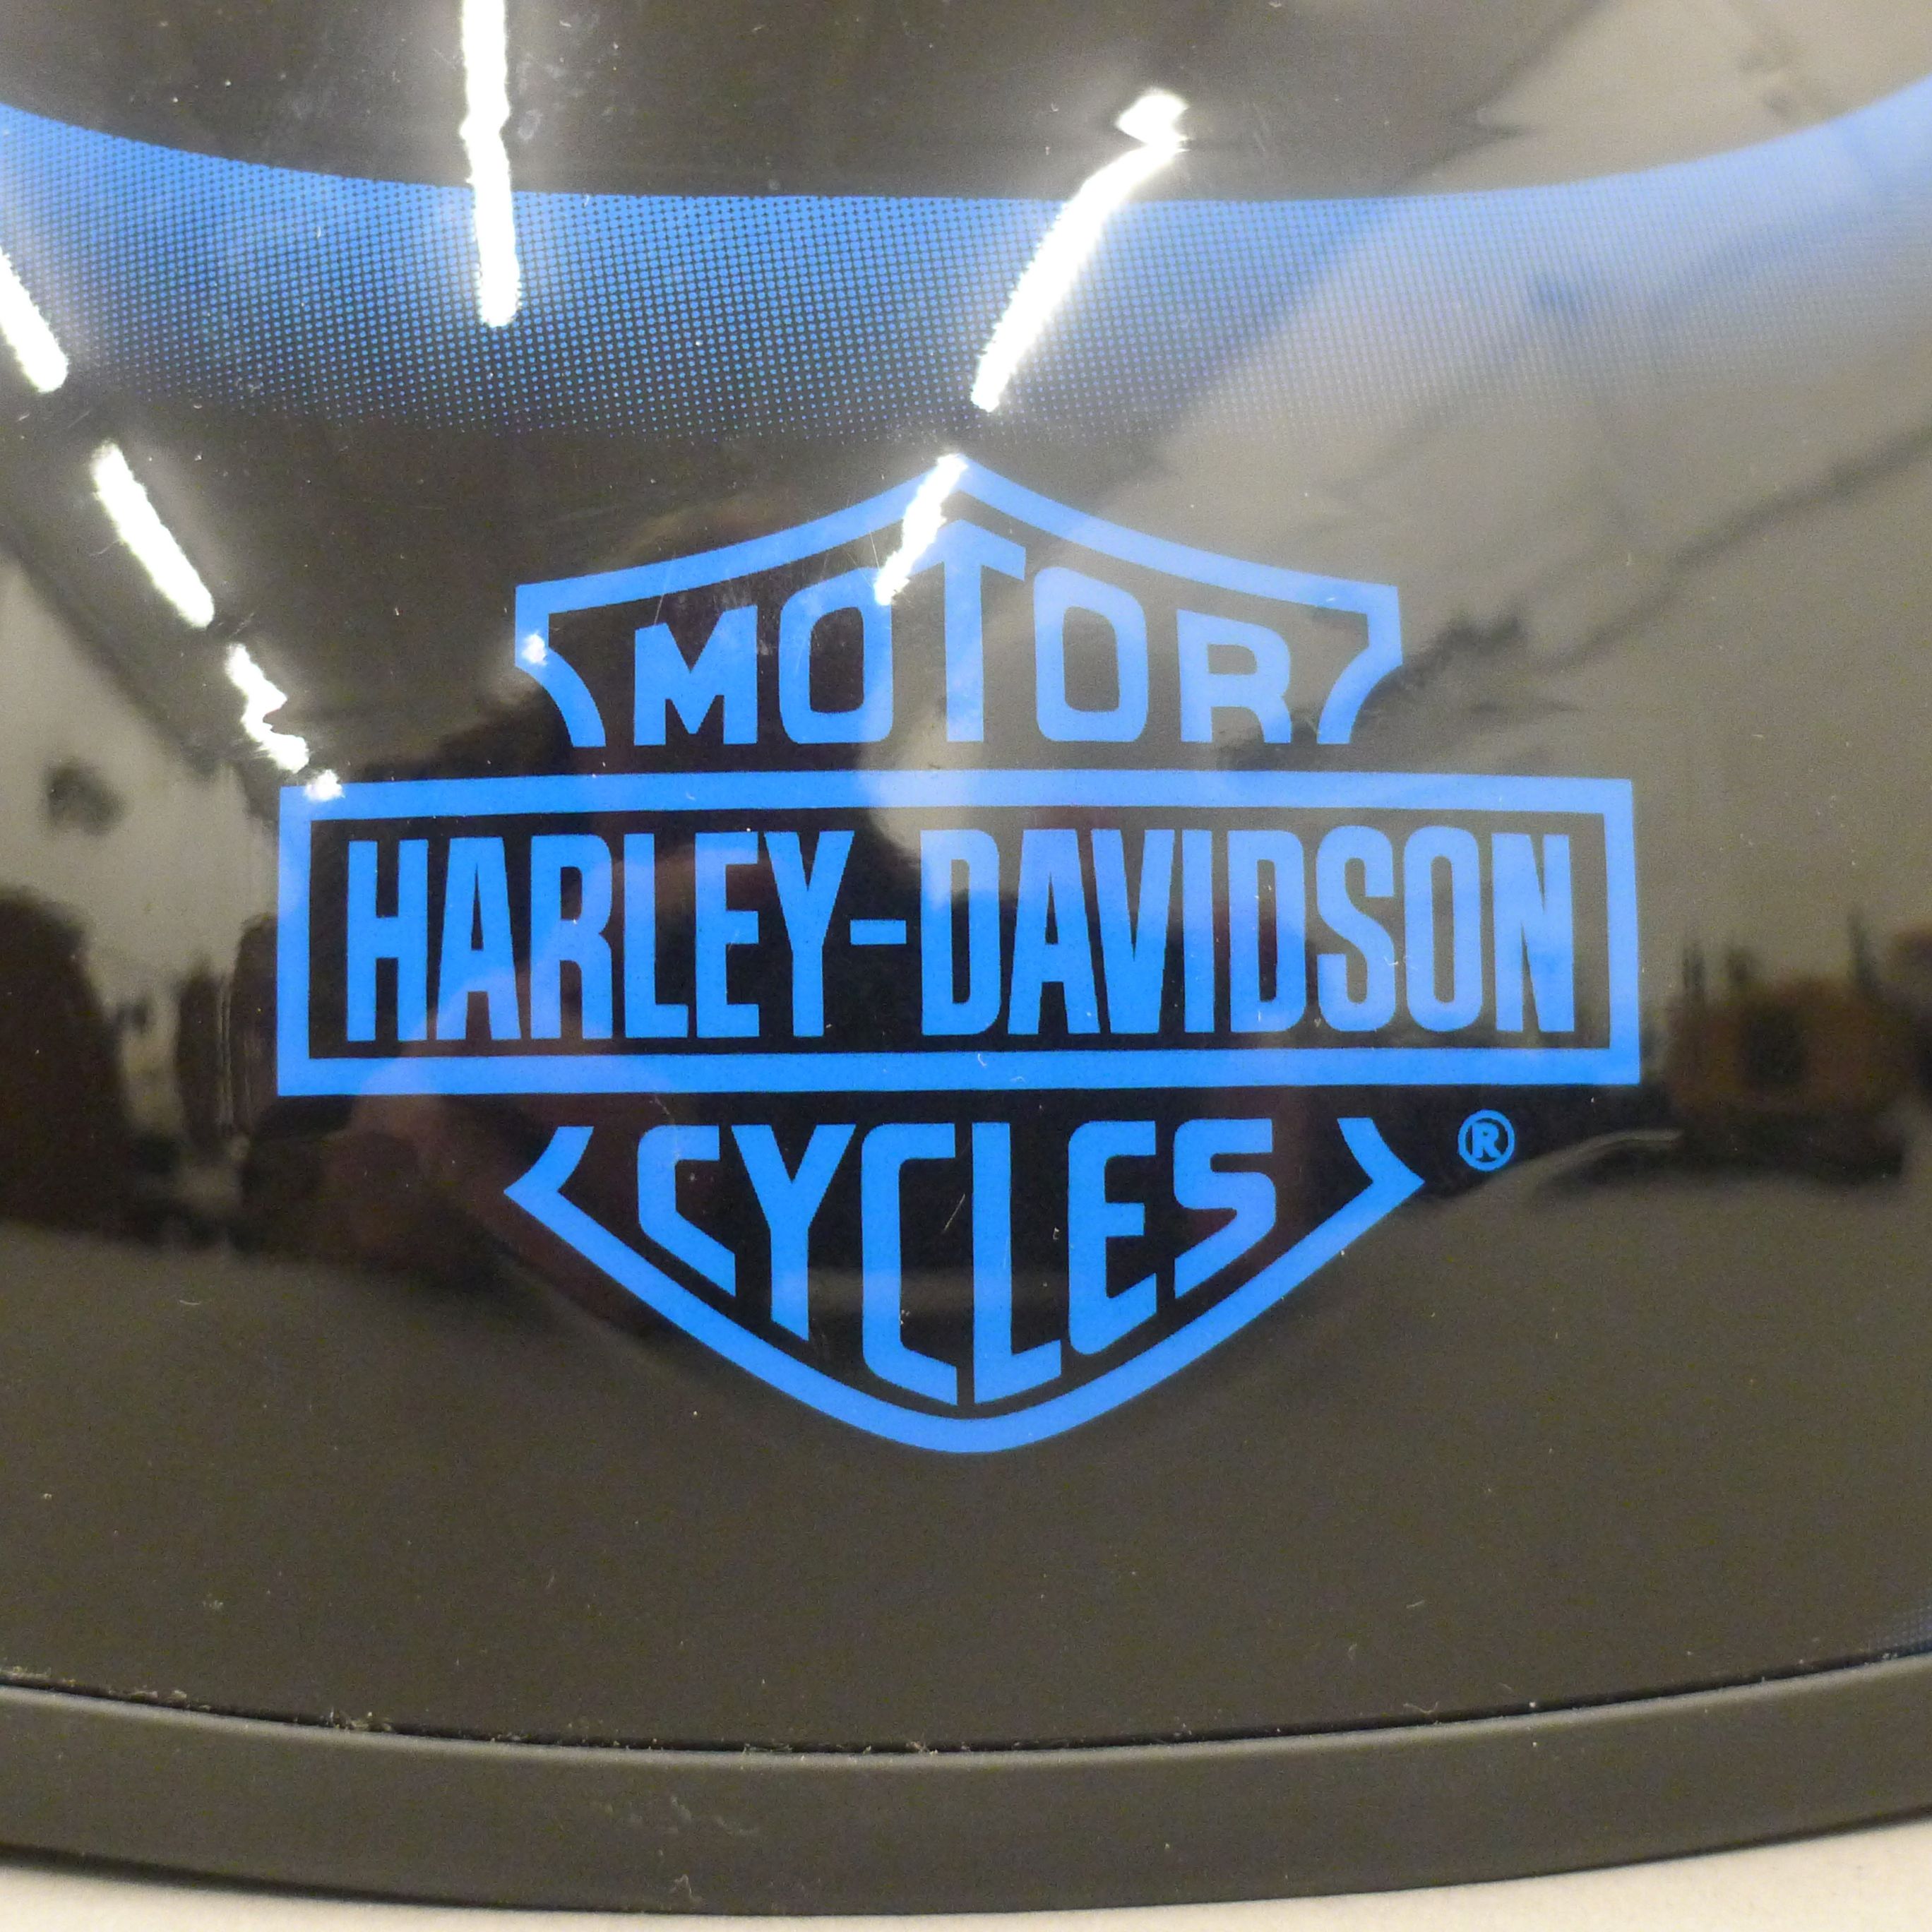 A Harley Davidson helmet. - Image 3 of 3